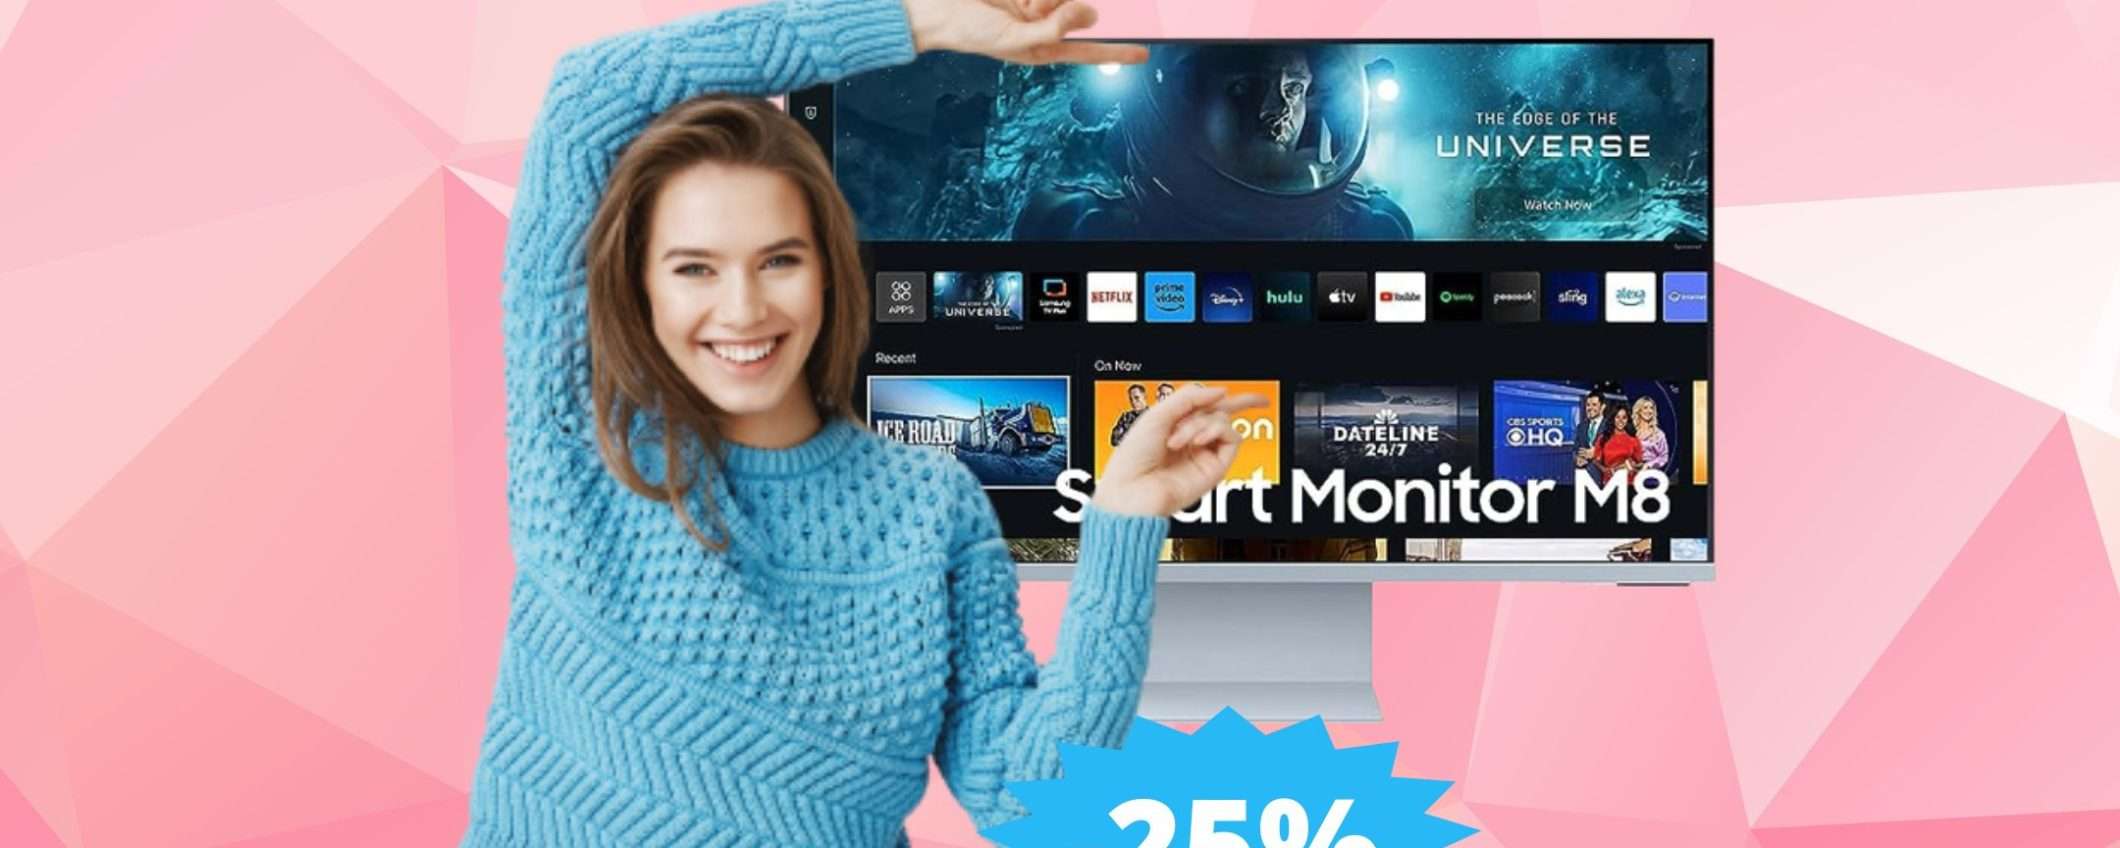 Samsung Smart Monitor M8: MEGA sconto del 25% su Amazon